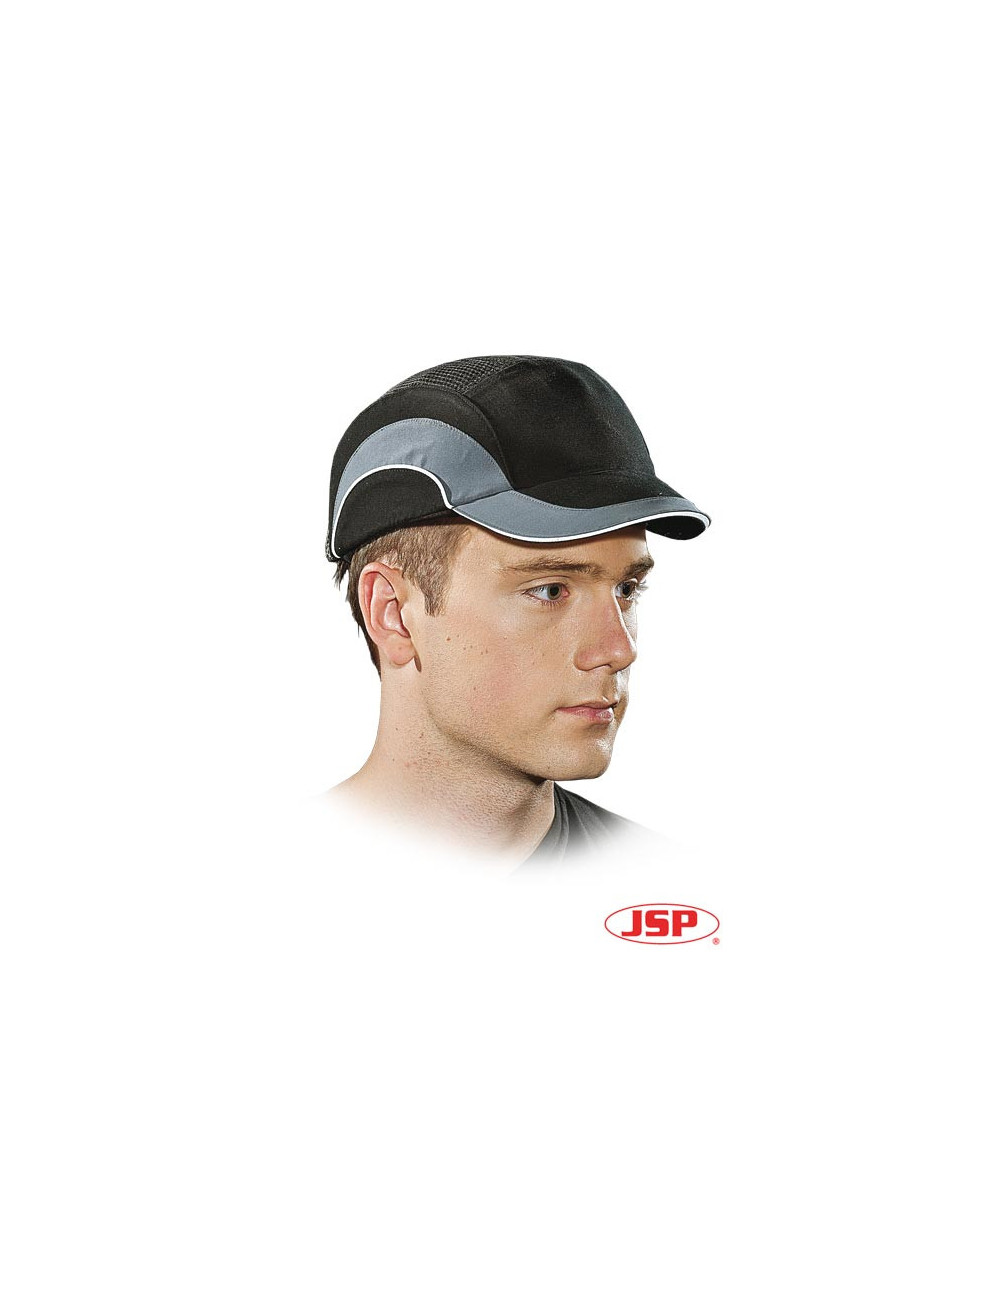 Industrial light helmet hardcapa1-k sb gray-black Jsp